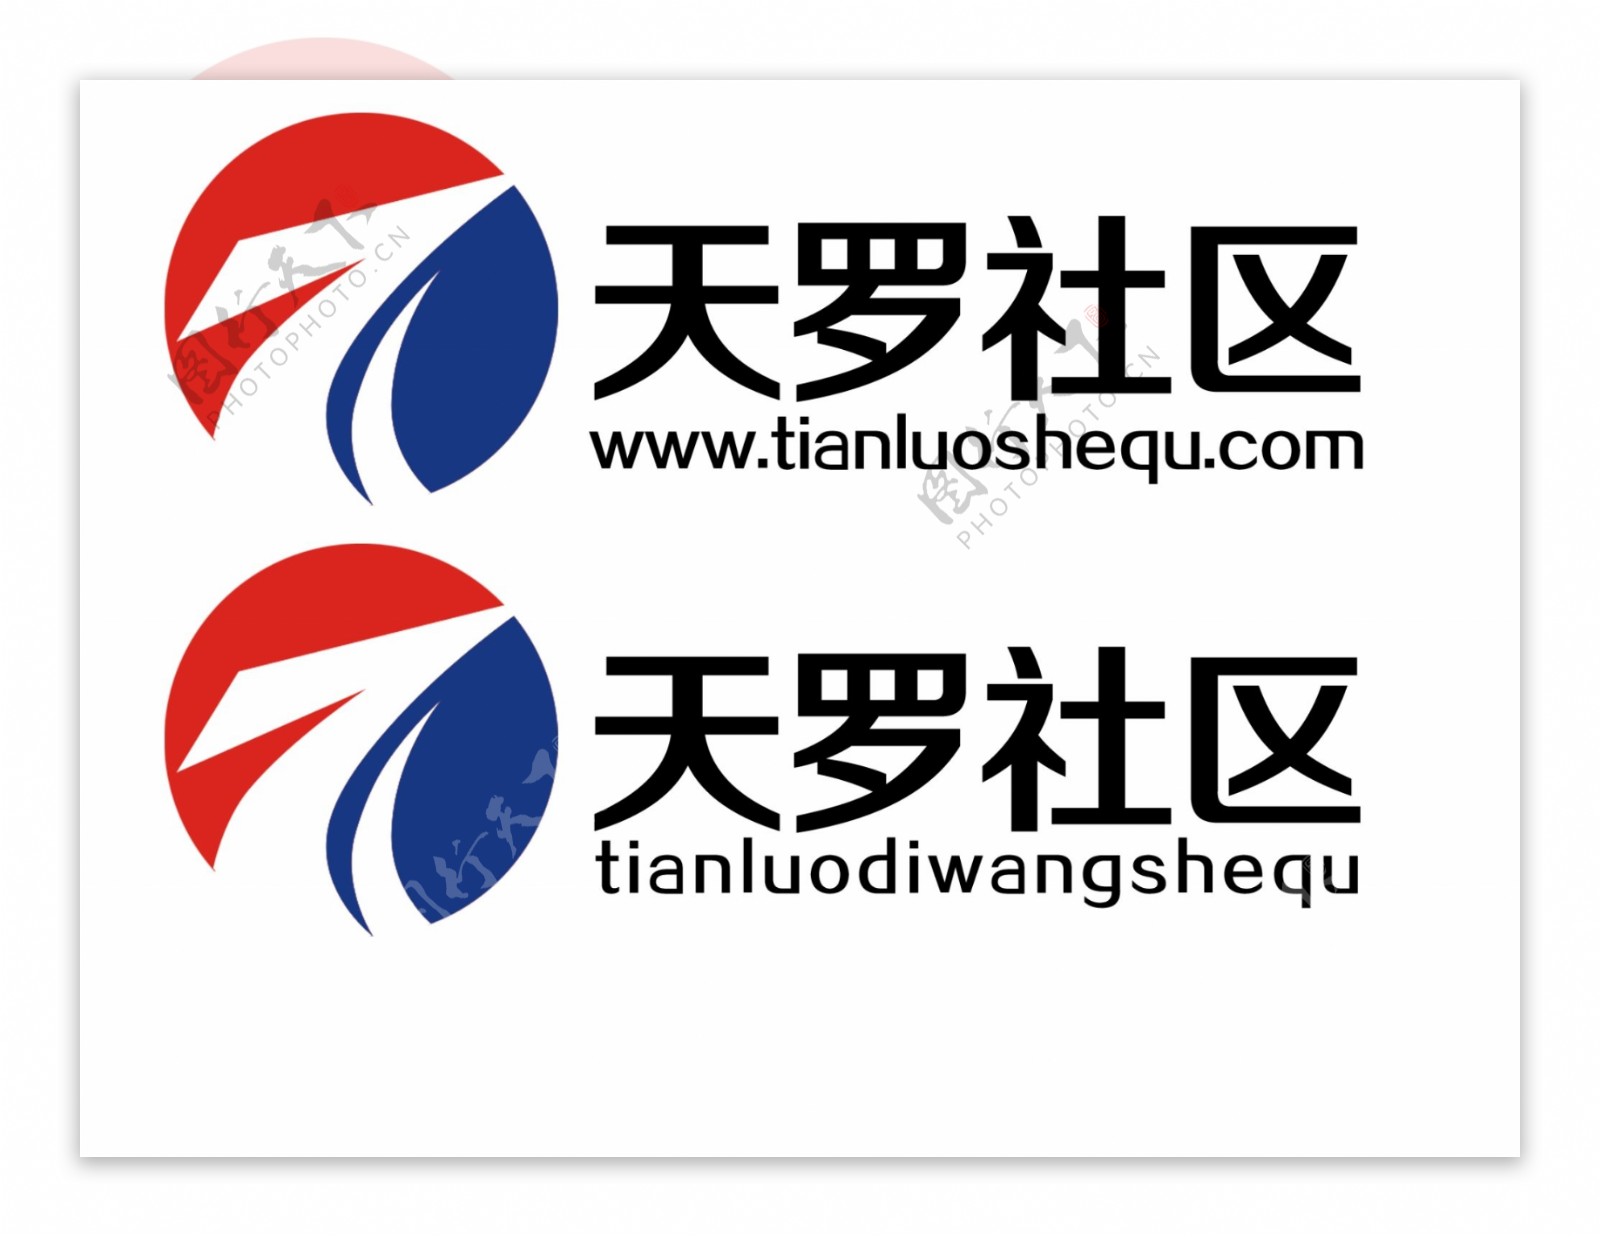 天罗社区网站logo